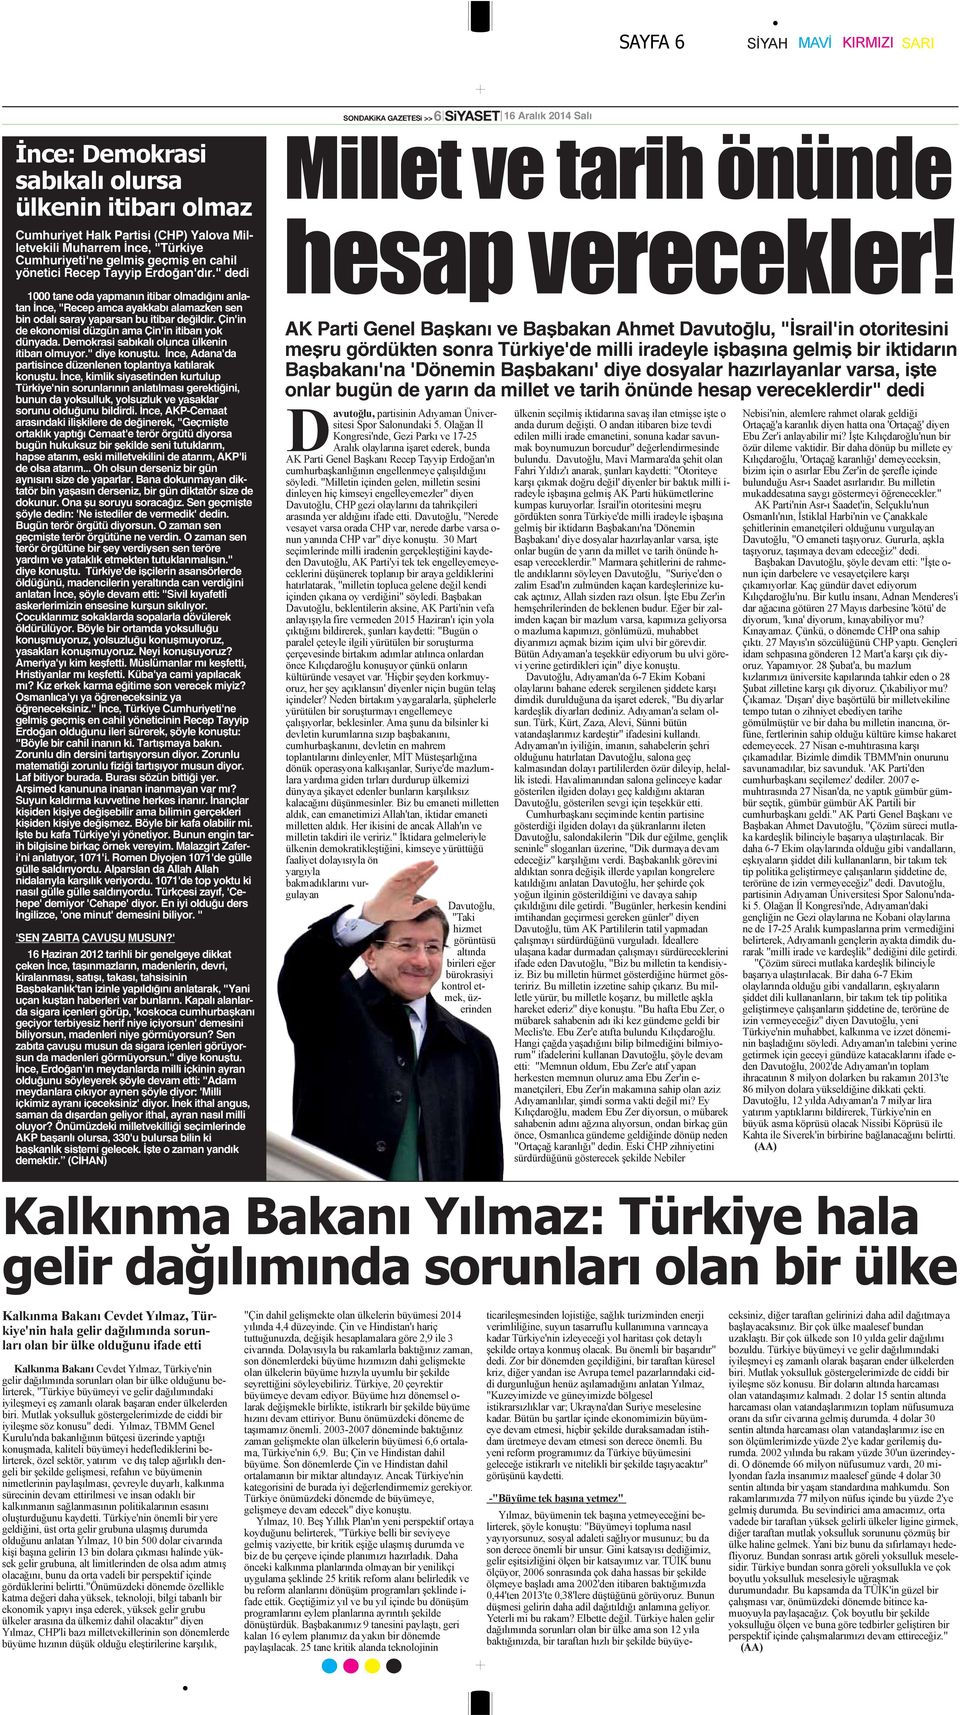 Demokrasi sabıkalı olunca ülkenin itibarı olmuyor." diye konuştu. İnce, Adana'da partisince düzenlenen toplantıya katılarak konuştu.